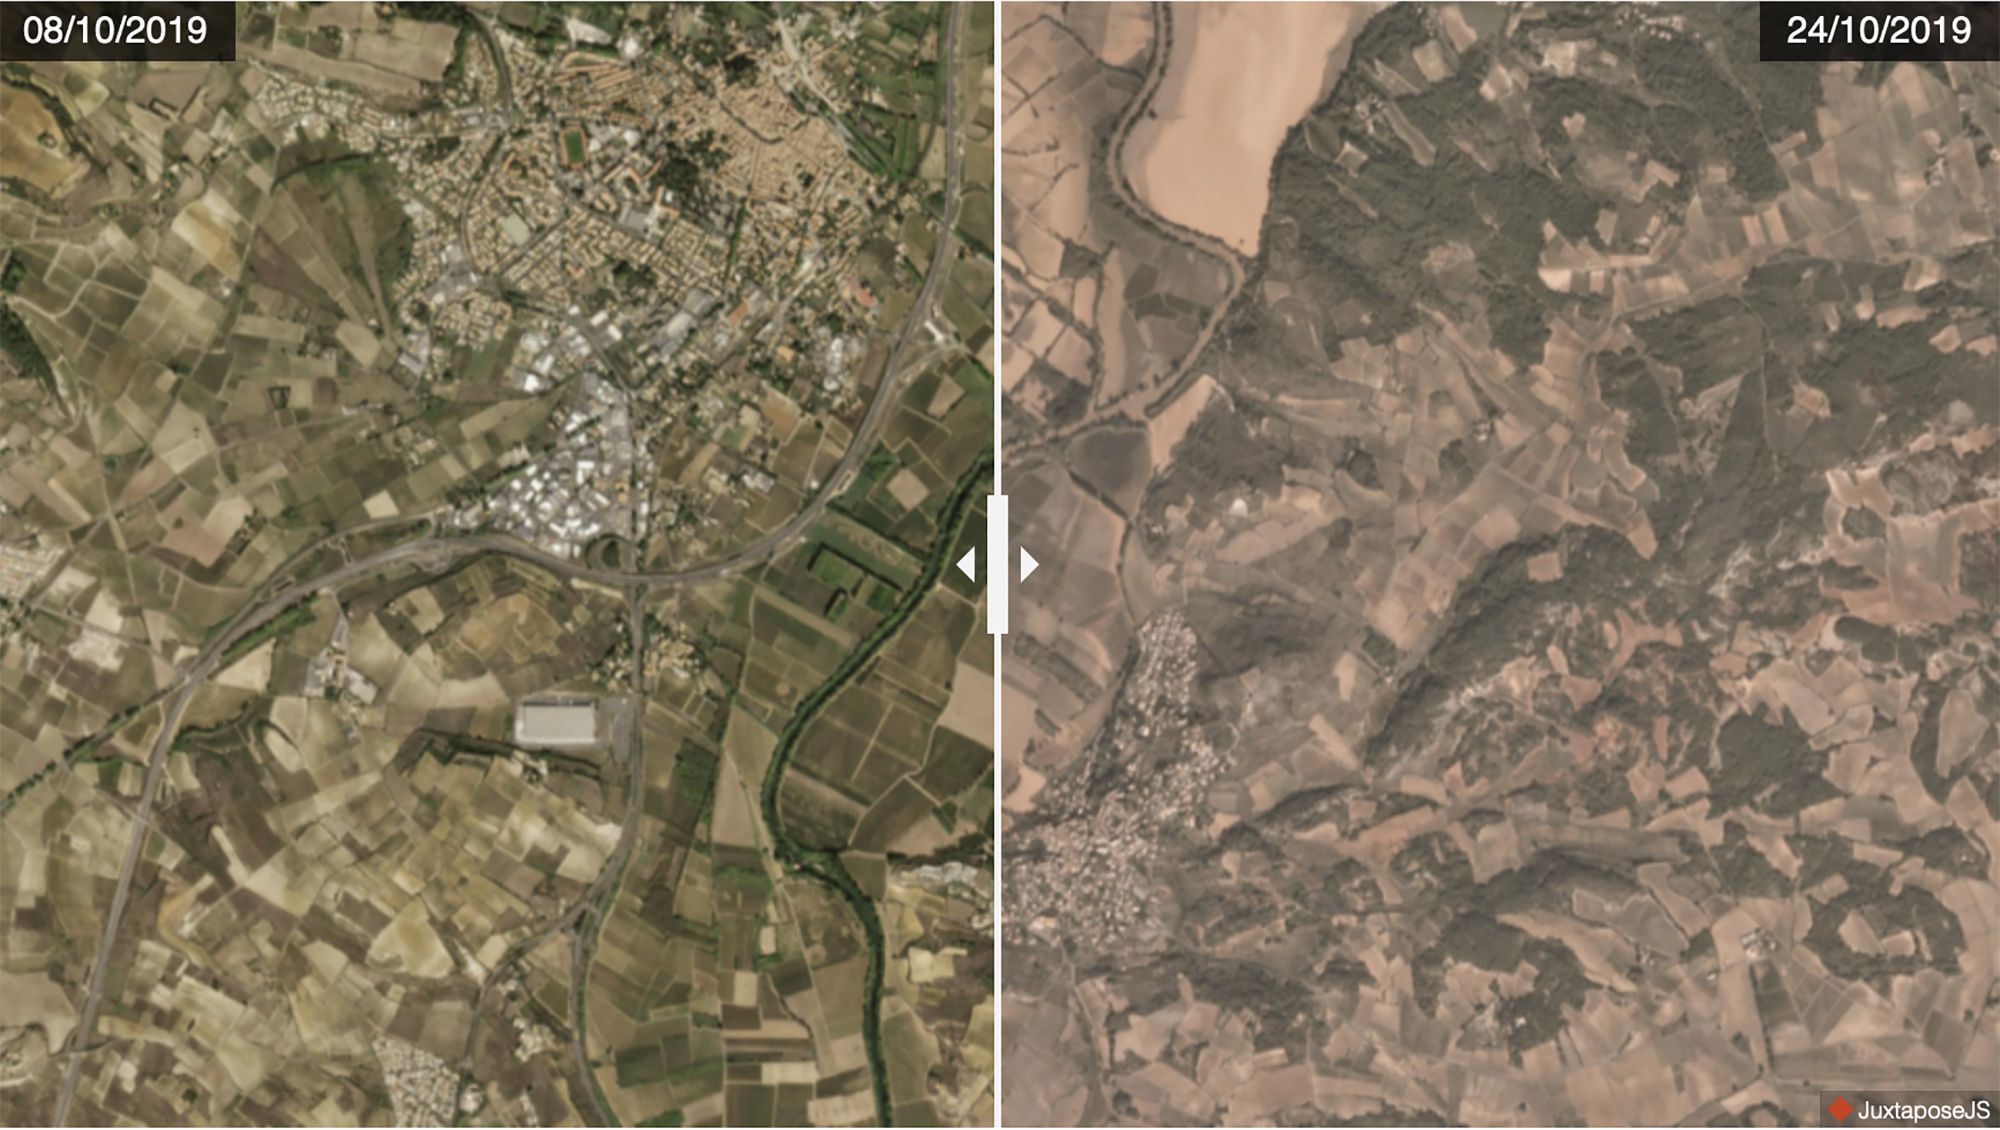 Inondations dans les communes de Pézenas et Castelnau-de-Guers vues depuis les satellites Dove de Planet. © 2019 Planet Labs, Inc.